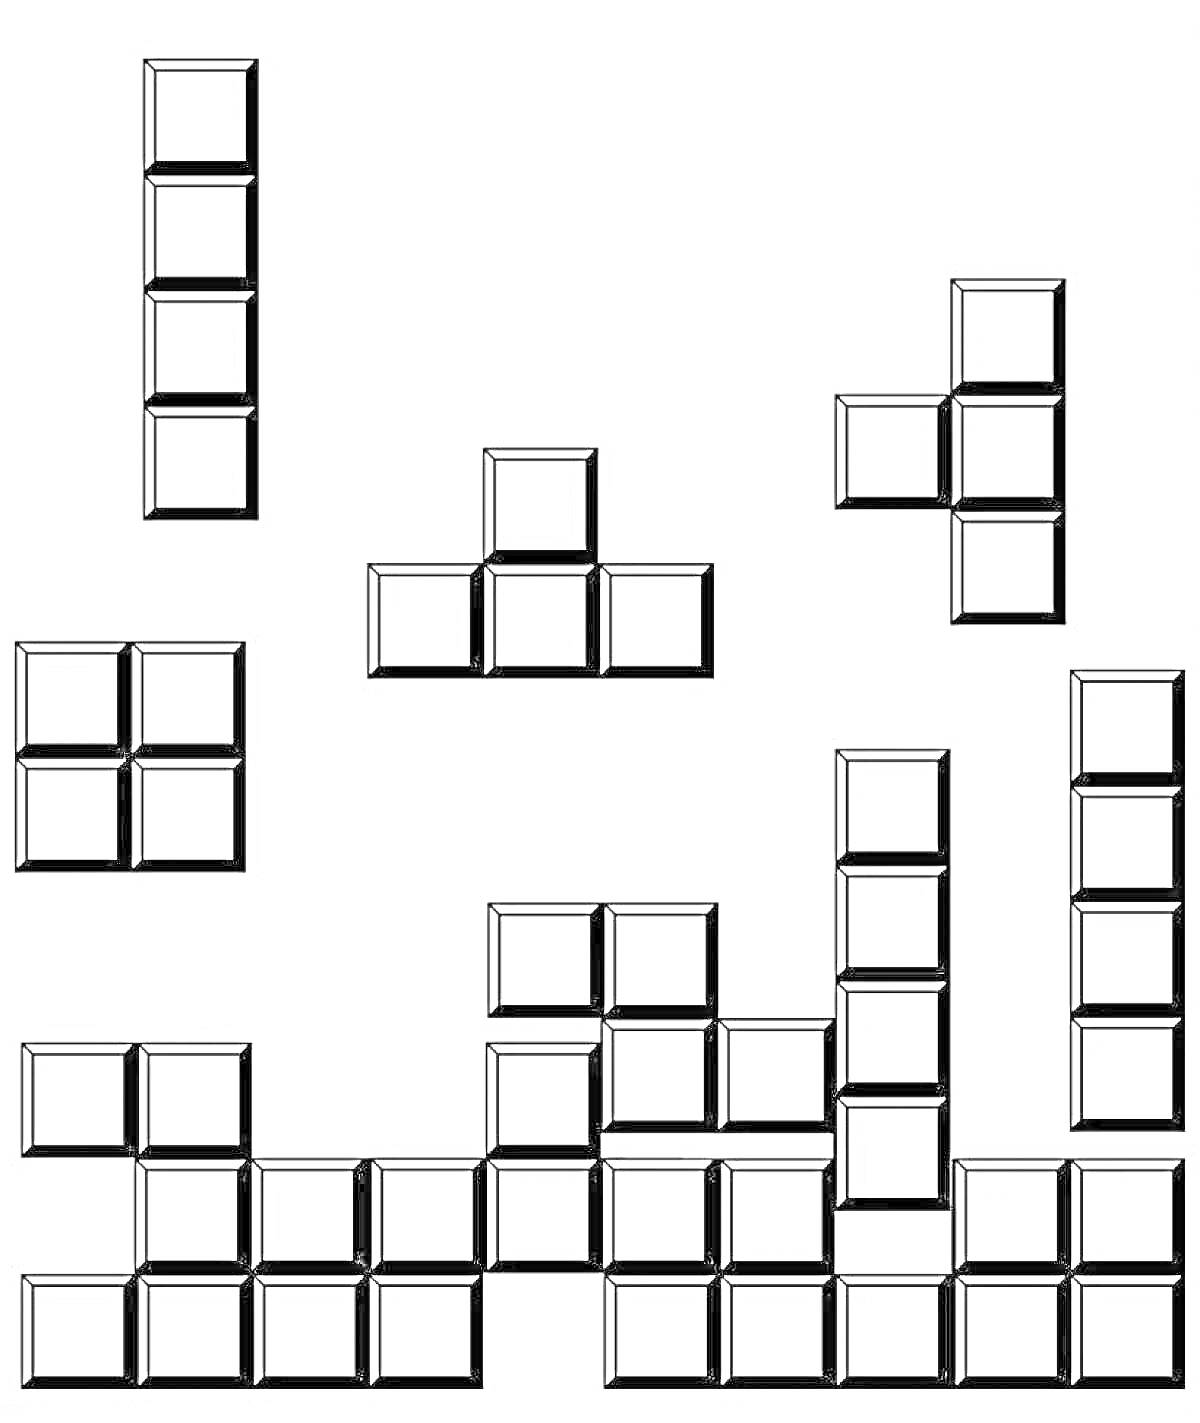 Раскраска Раскраска - Тетрис с различными фигурами: палка, квадрат, L-образные и T-образные фигуры